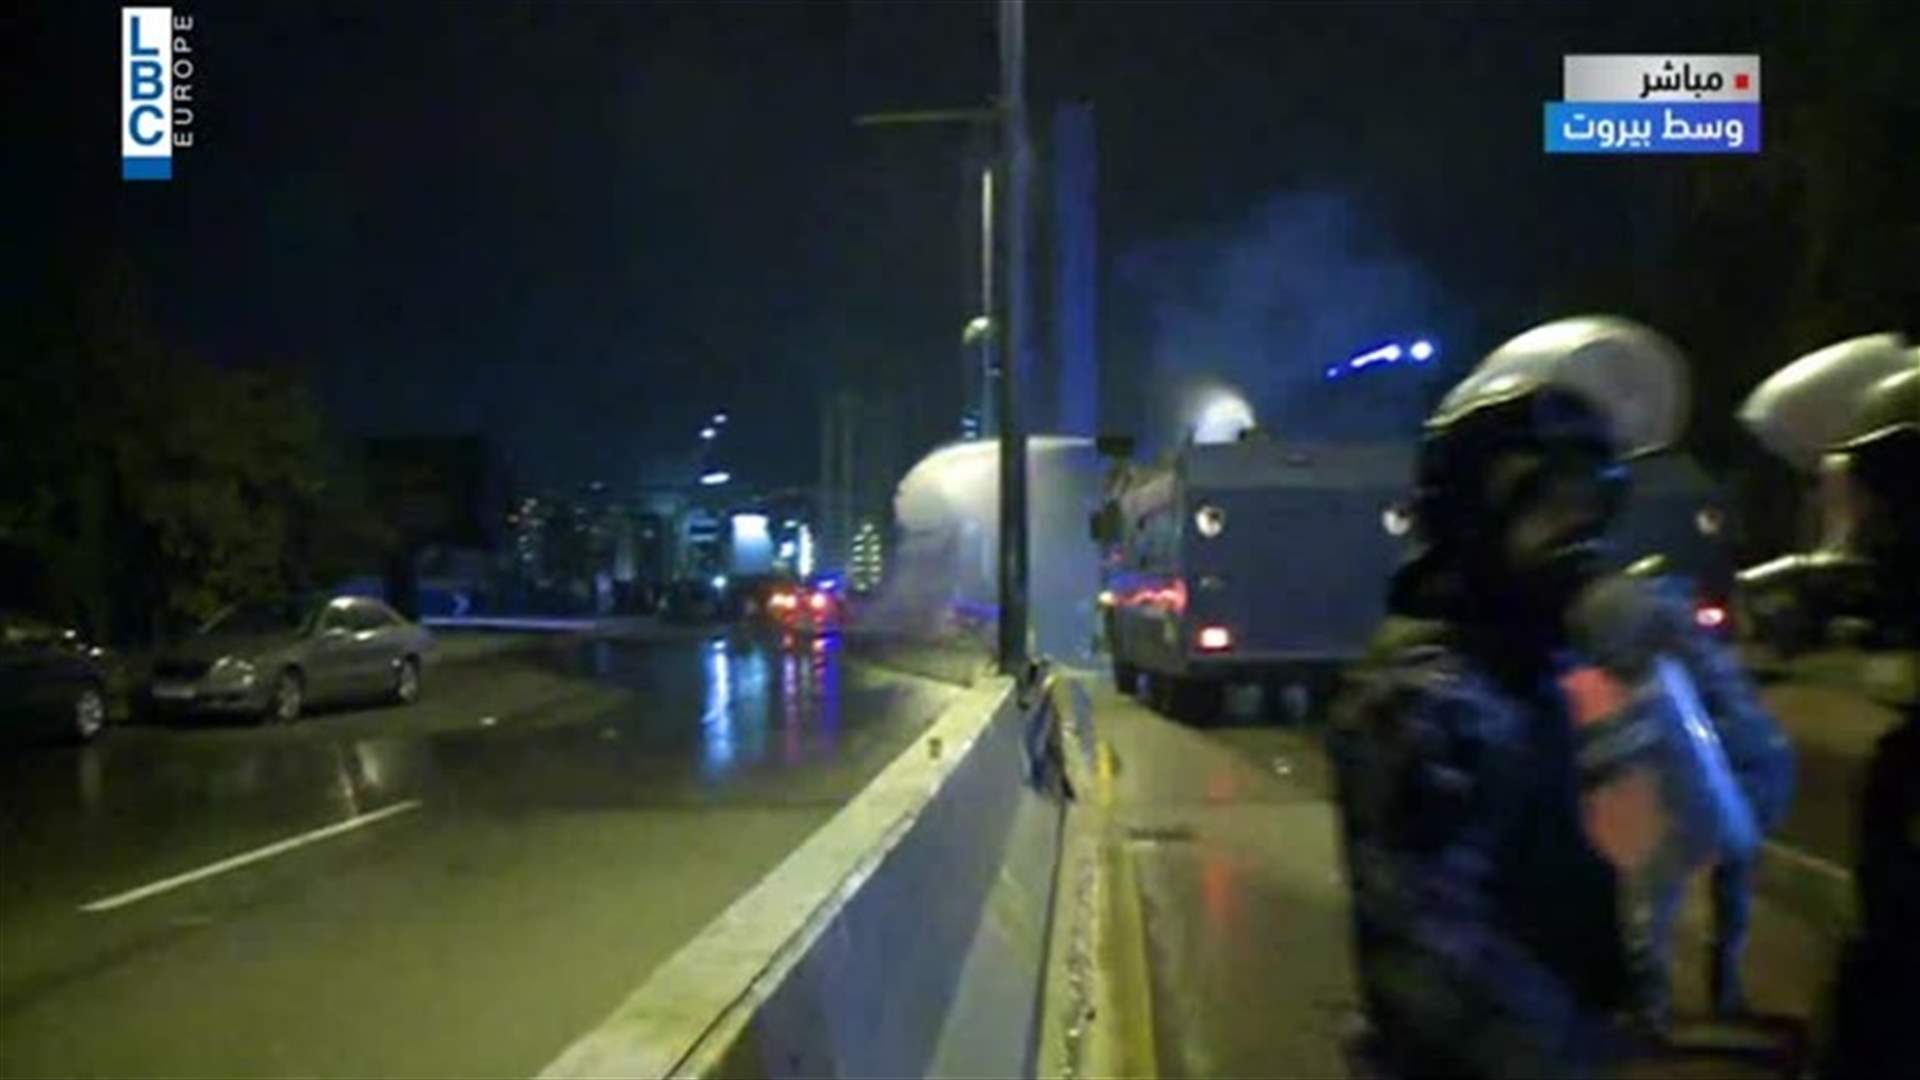 قوى الأمن ترش المتظاهرين بالمياه عند جسر شارل الحلو (فيديو)